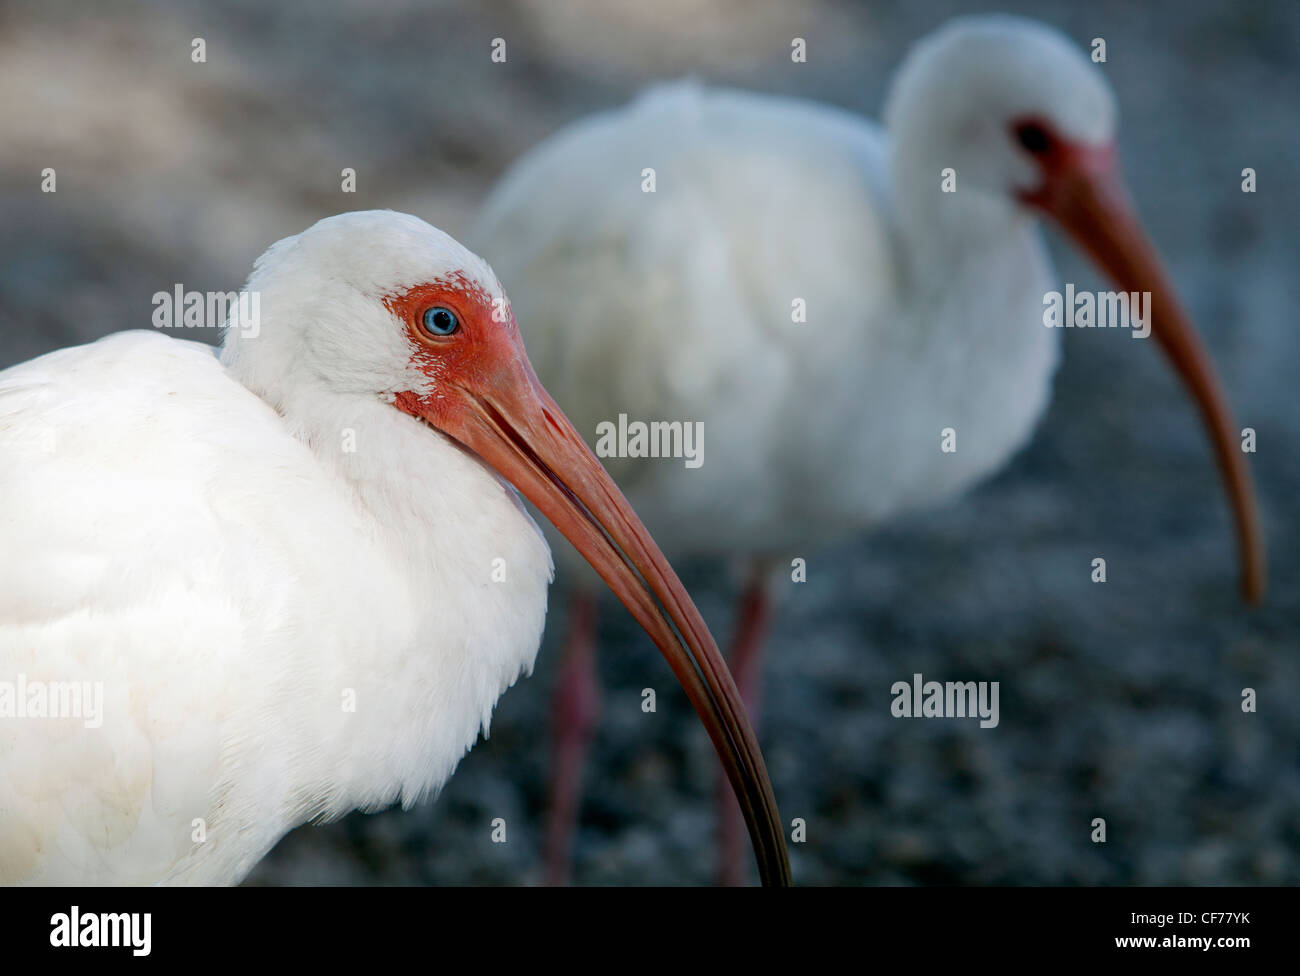 A pair of white ibis, Florida Stock Photo